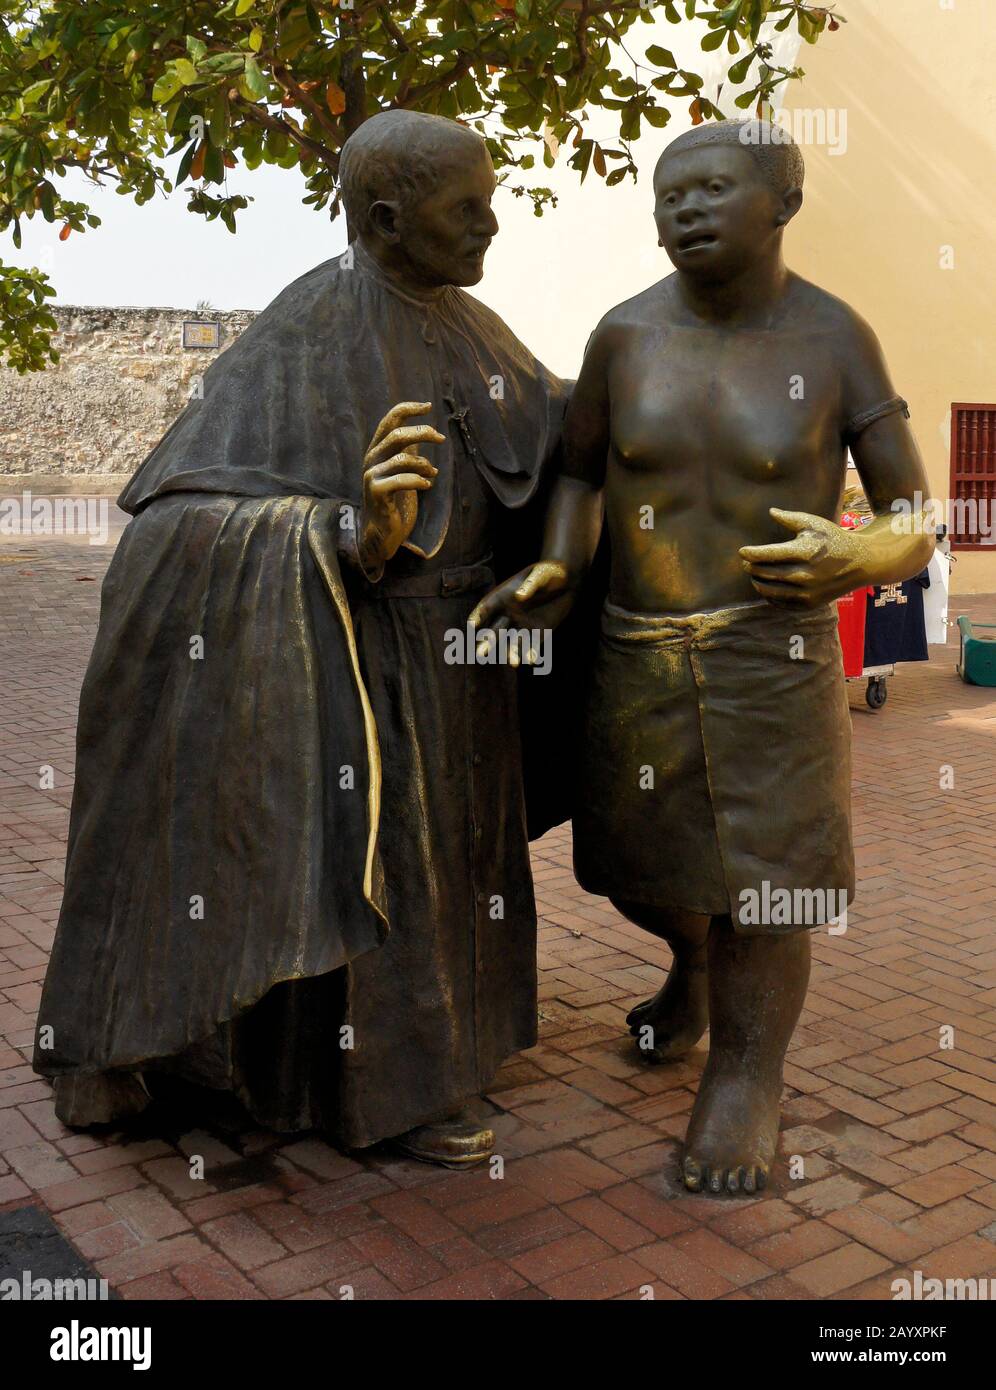 La scultura in bronzo di Enrique Grau del missionario gesuita San Pedro Claver con uno schiavo nella Plaza de San Pedro, città vecchia di Cartagena, Colombia Foto Stock